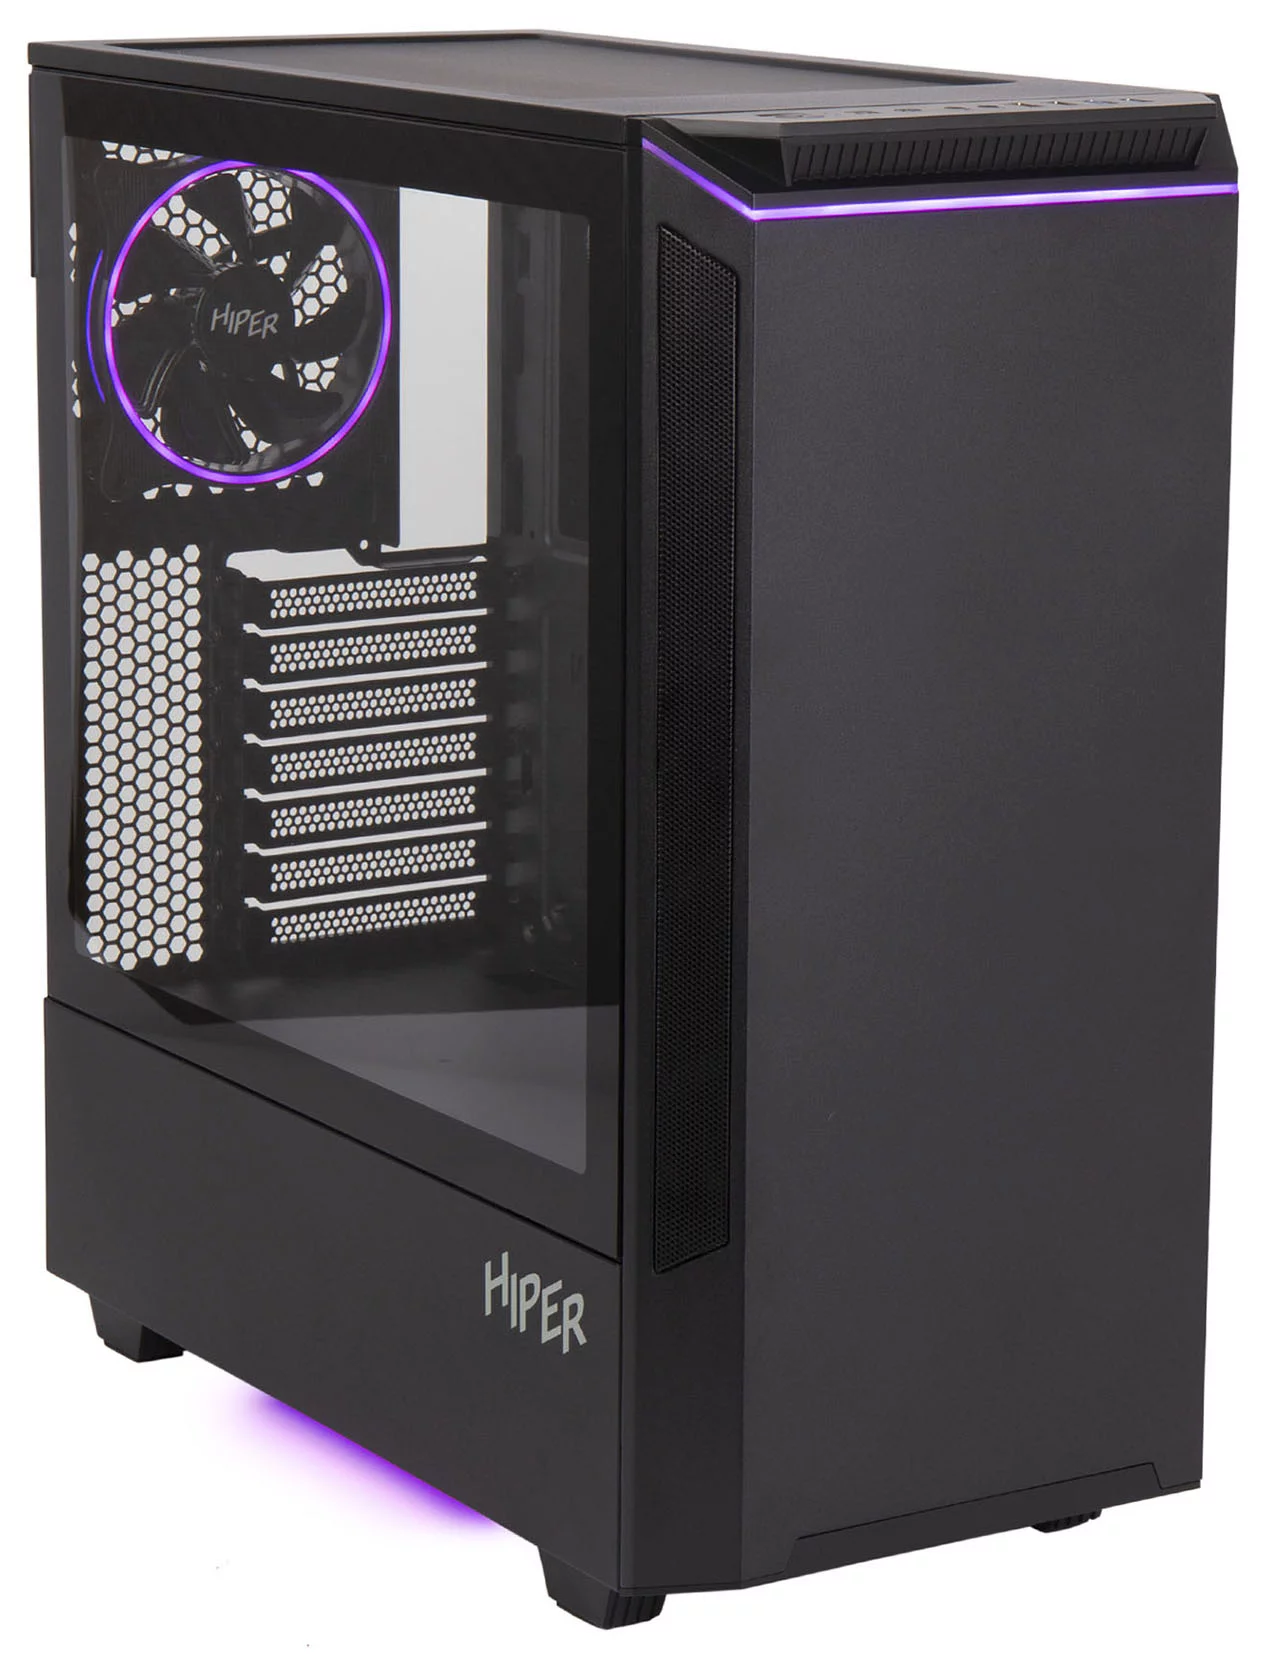 CASE HIPER PB81 черный без БП ATX 3x120mm 2xUSB2.0 2xUSB3.0 audio bott PSU